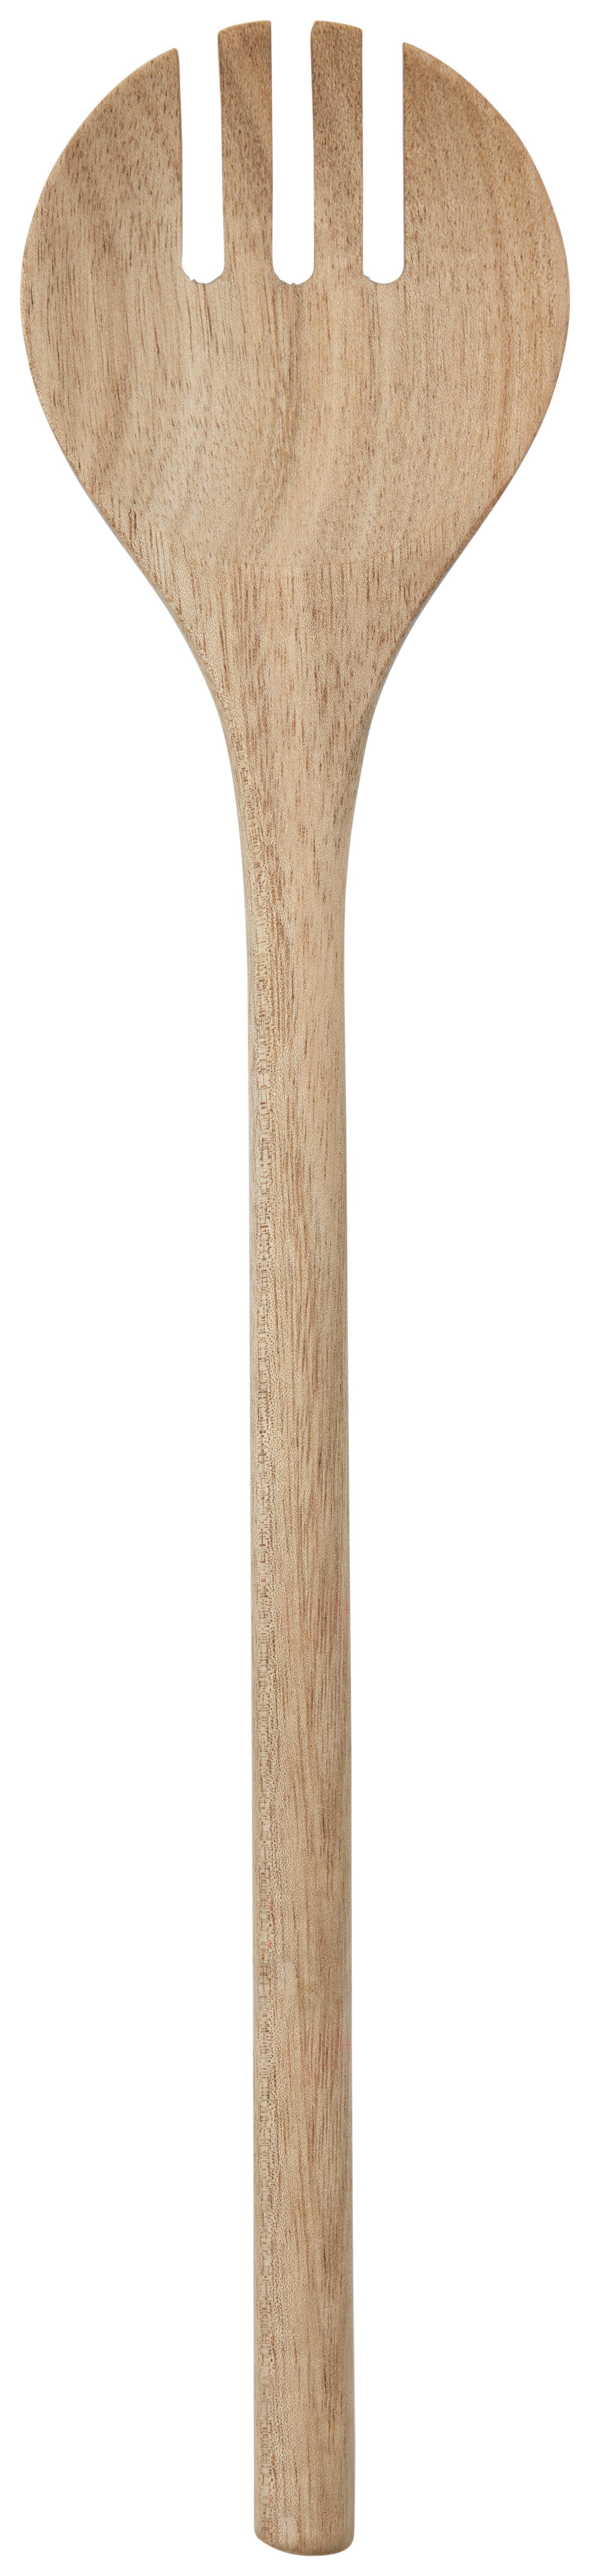 Kochlöffel North Breeze in Akazienfarben - Akaziefarben, KONVENTIONELL, Holz (30cm) - Zandiara